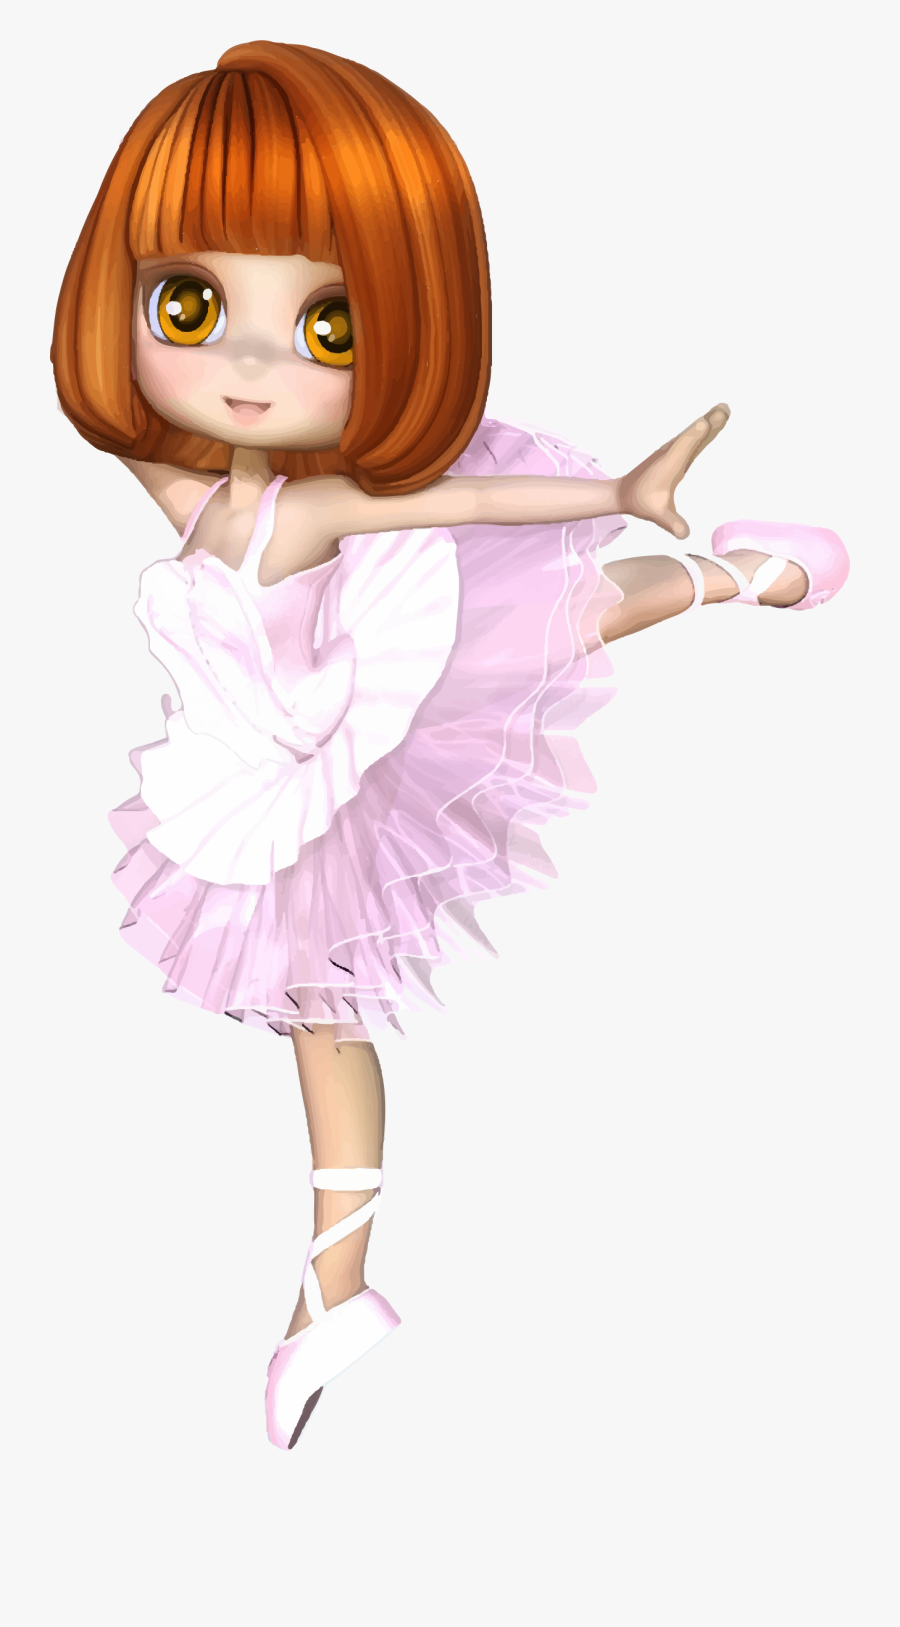 Cartoon Ballerina Image Group - Dancing Anime Girl Png, Transparent Clipart